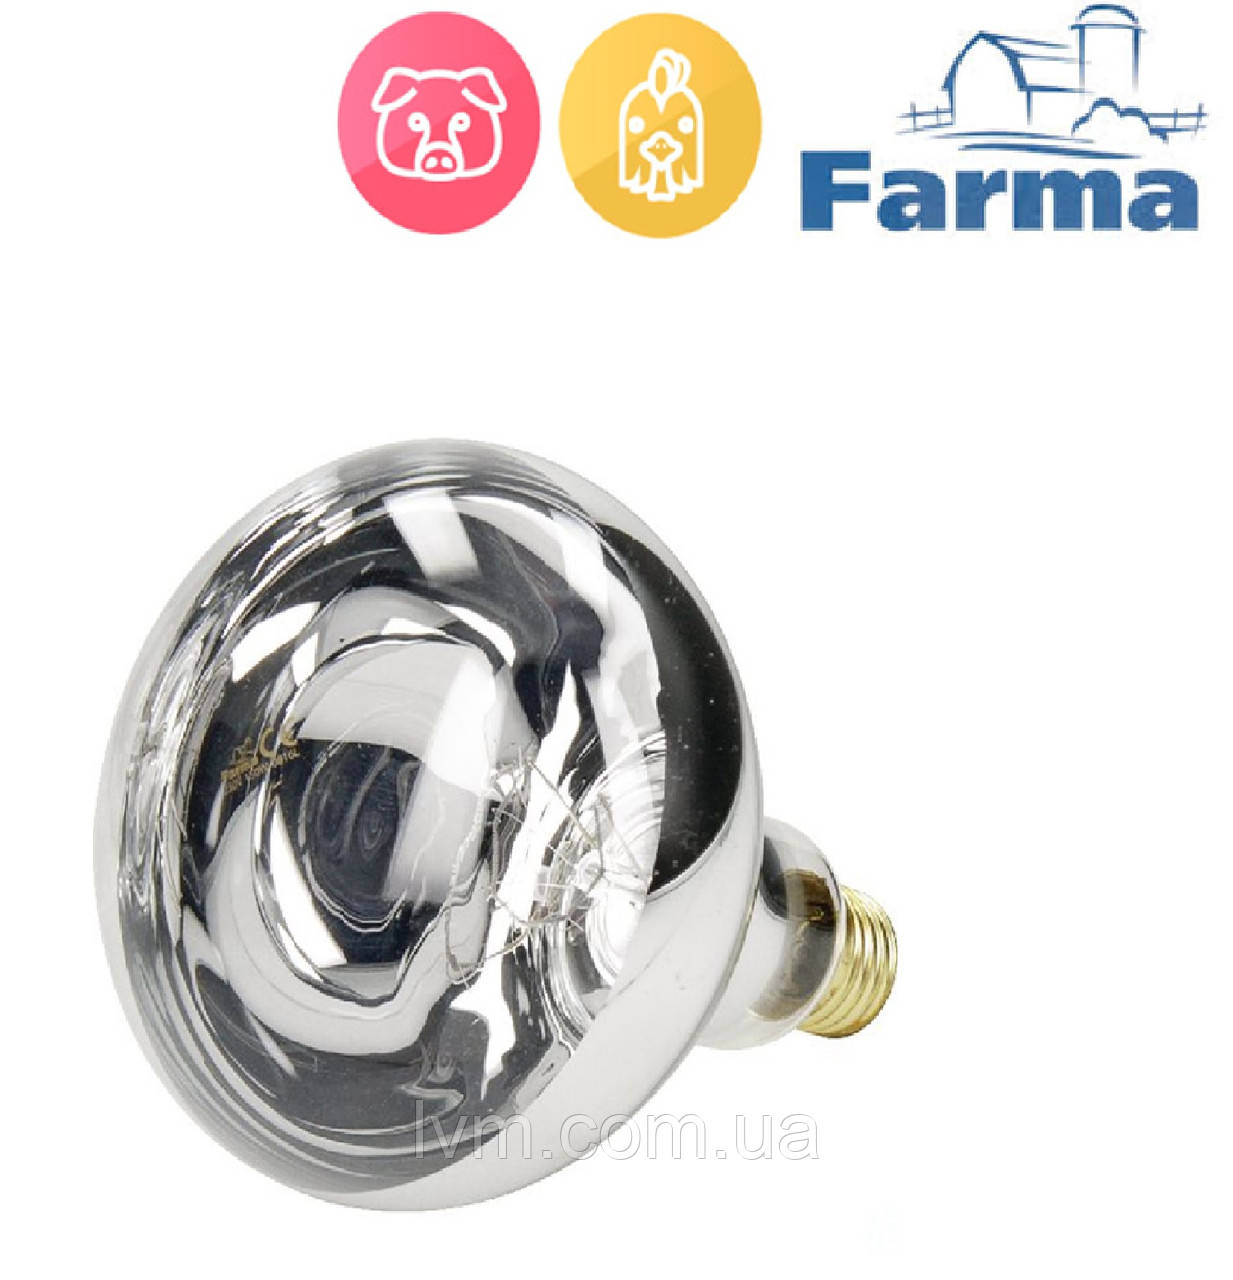 Лампа інфрачервона HardGlass 150Вт прозора, FARMA (Польща) ОРИГІНАЛ !